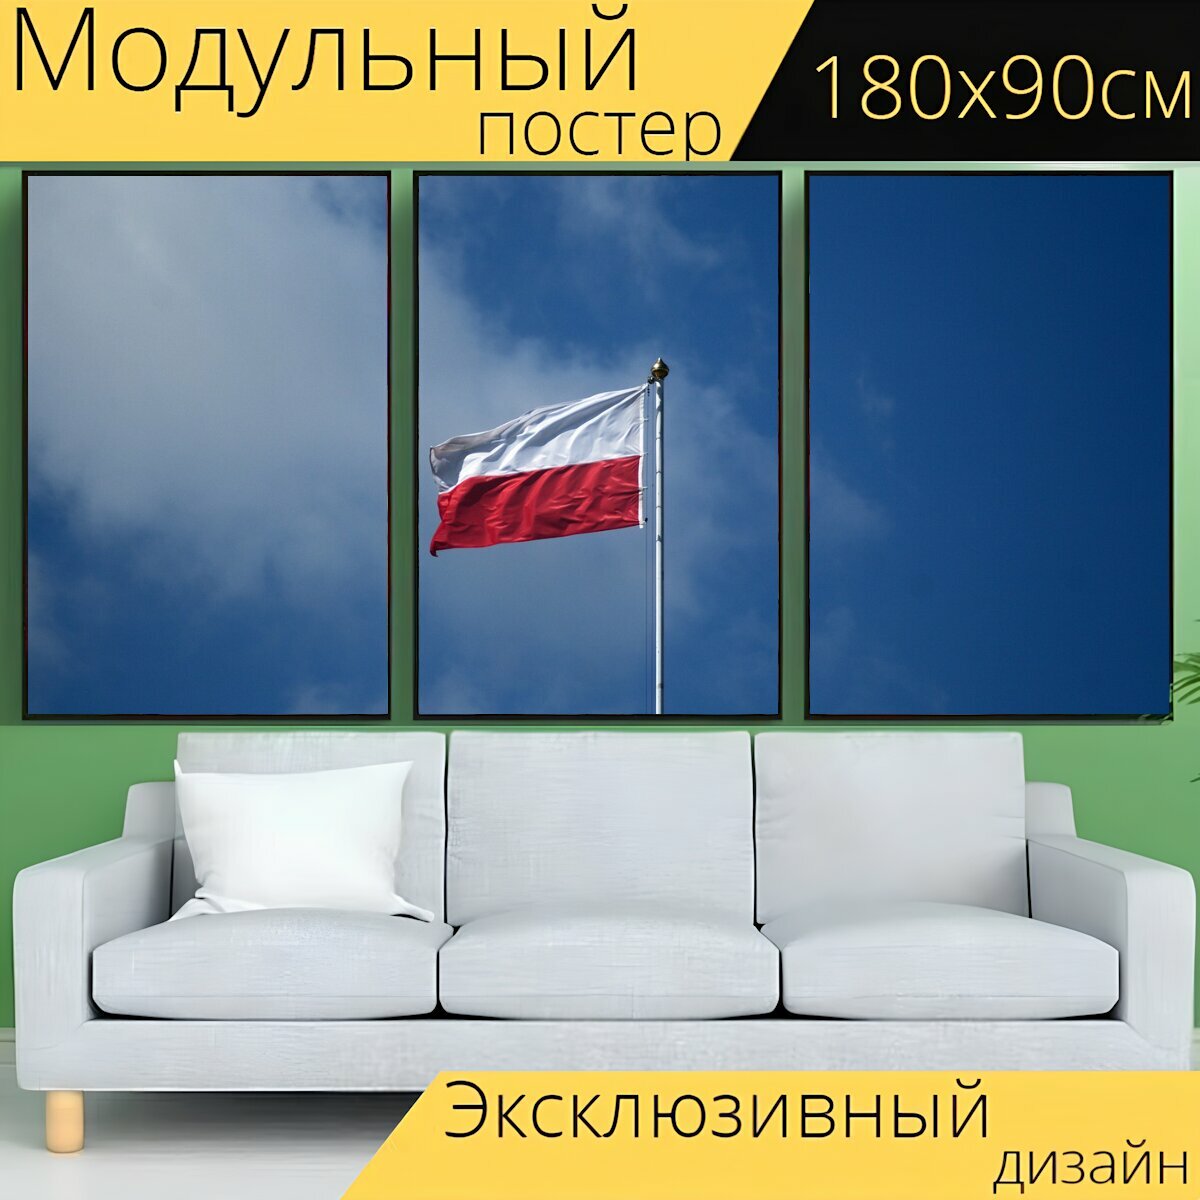 Модульный постер "Польский флаг, небо, флаг" 180 x 90 см. для интерьера